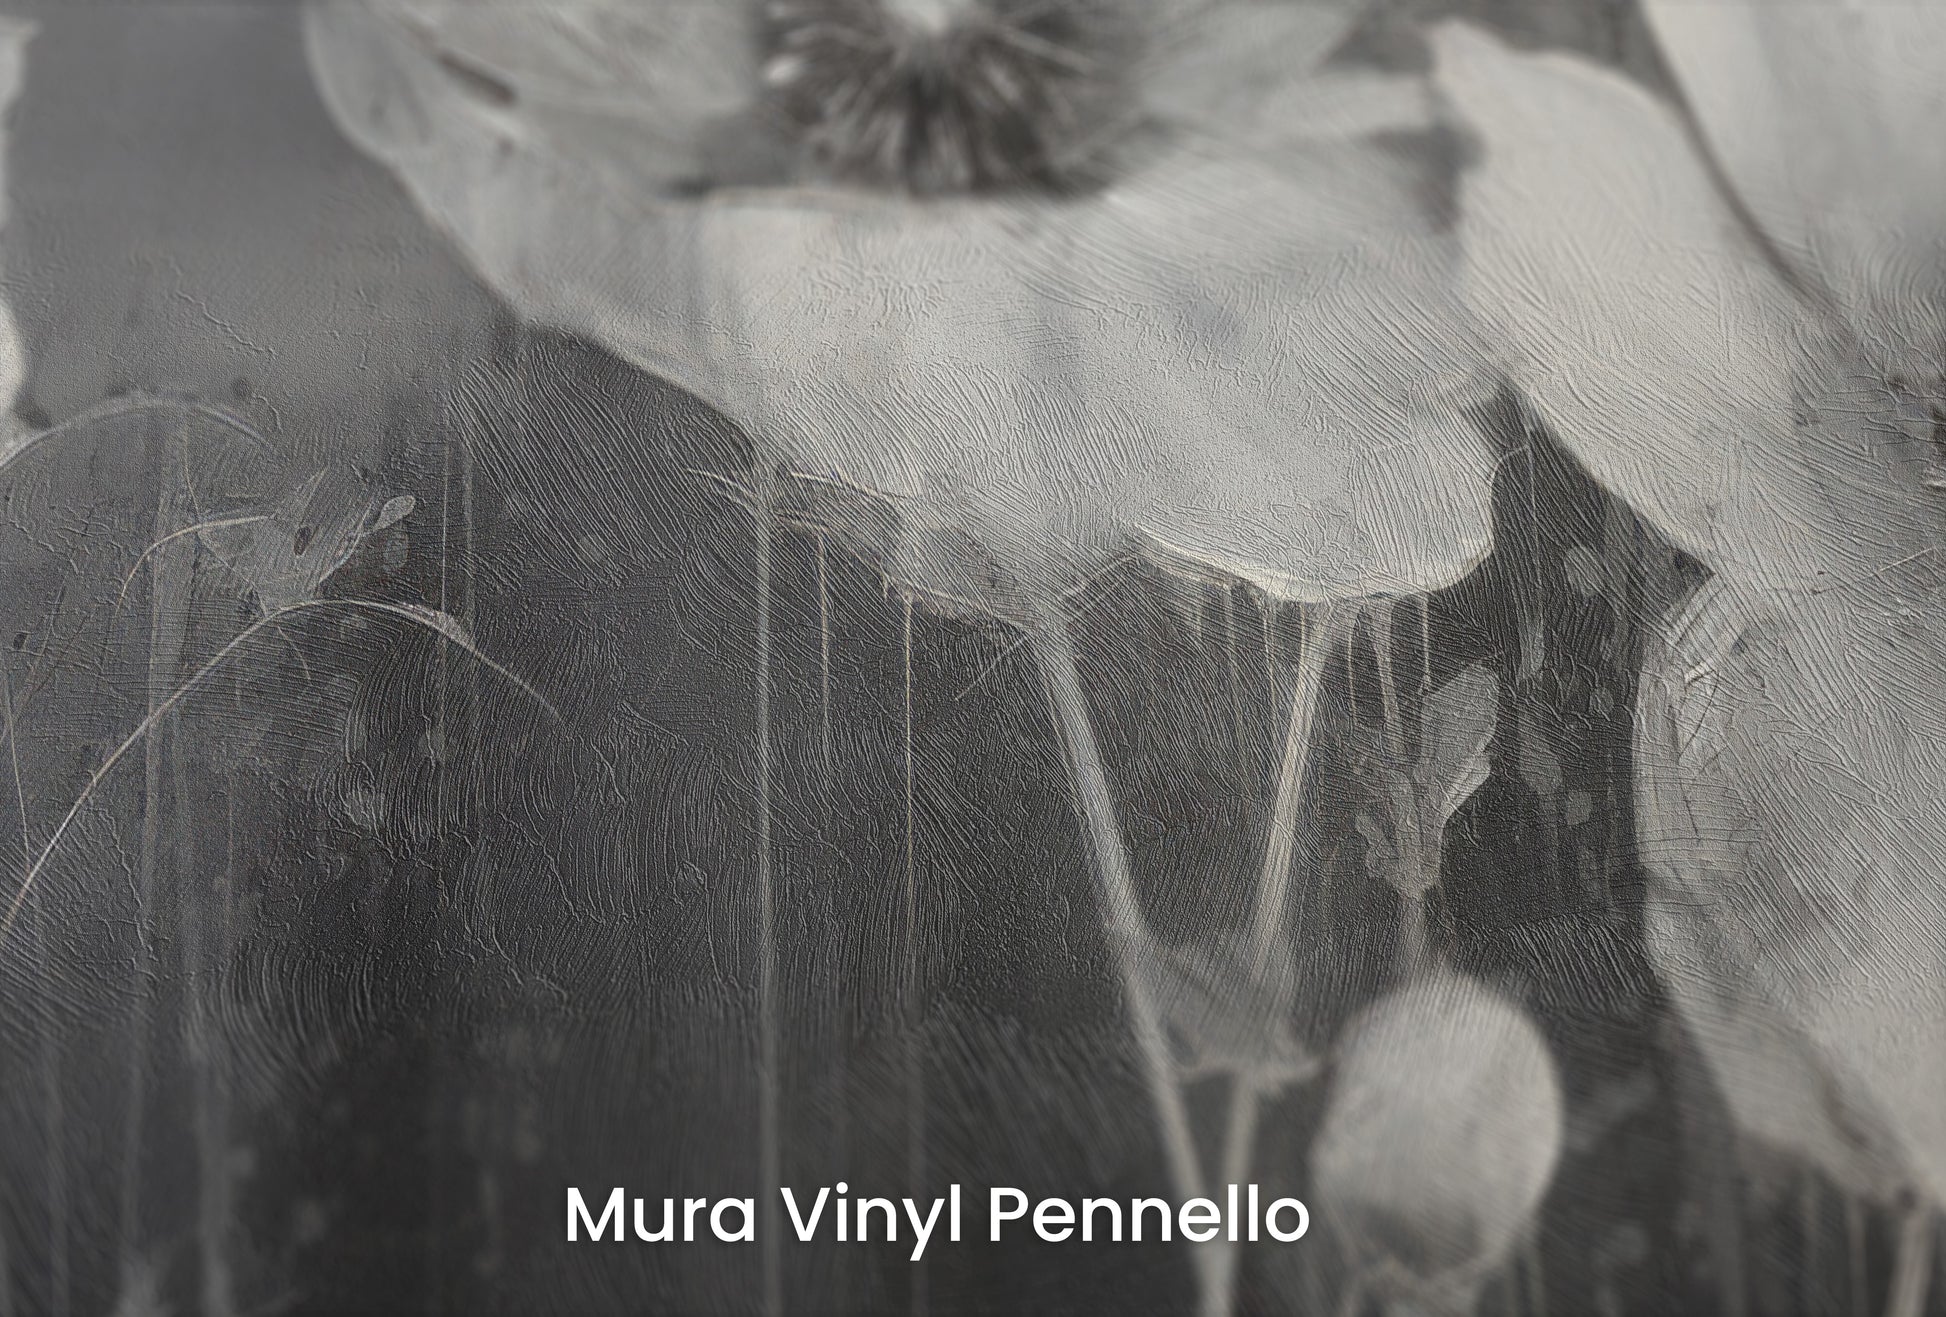 Zbliżenie na artystyczną fototapetę o nazwie NOIR FLORAL WHISPER na podłożu Mura Vinyl Pennello - faktura pociągnięć pędzla malarskiego.